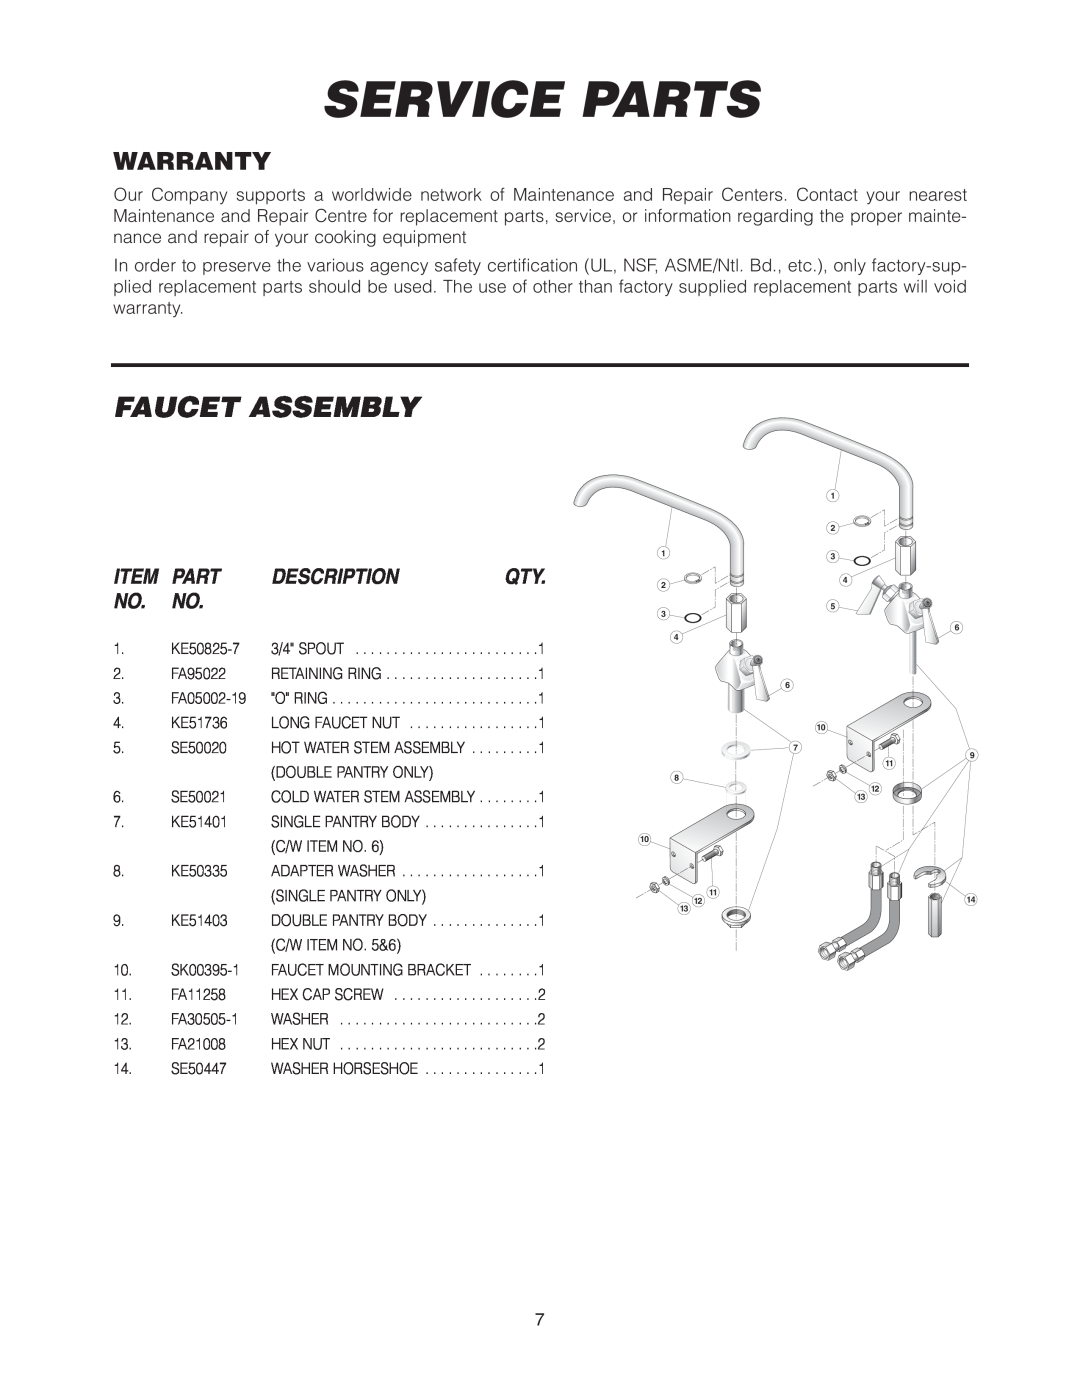 Cleveland Range SEL-30-T1, SEL-40-T1 manual Service Parts, Faucet Assembly, Warranty, Description 